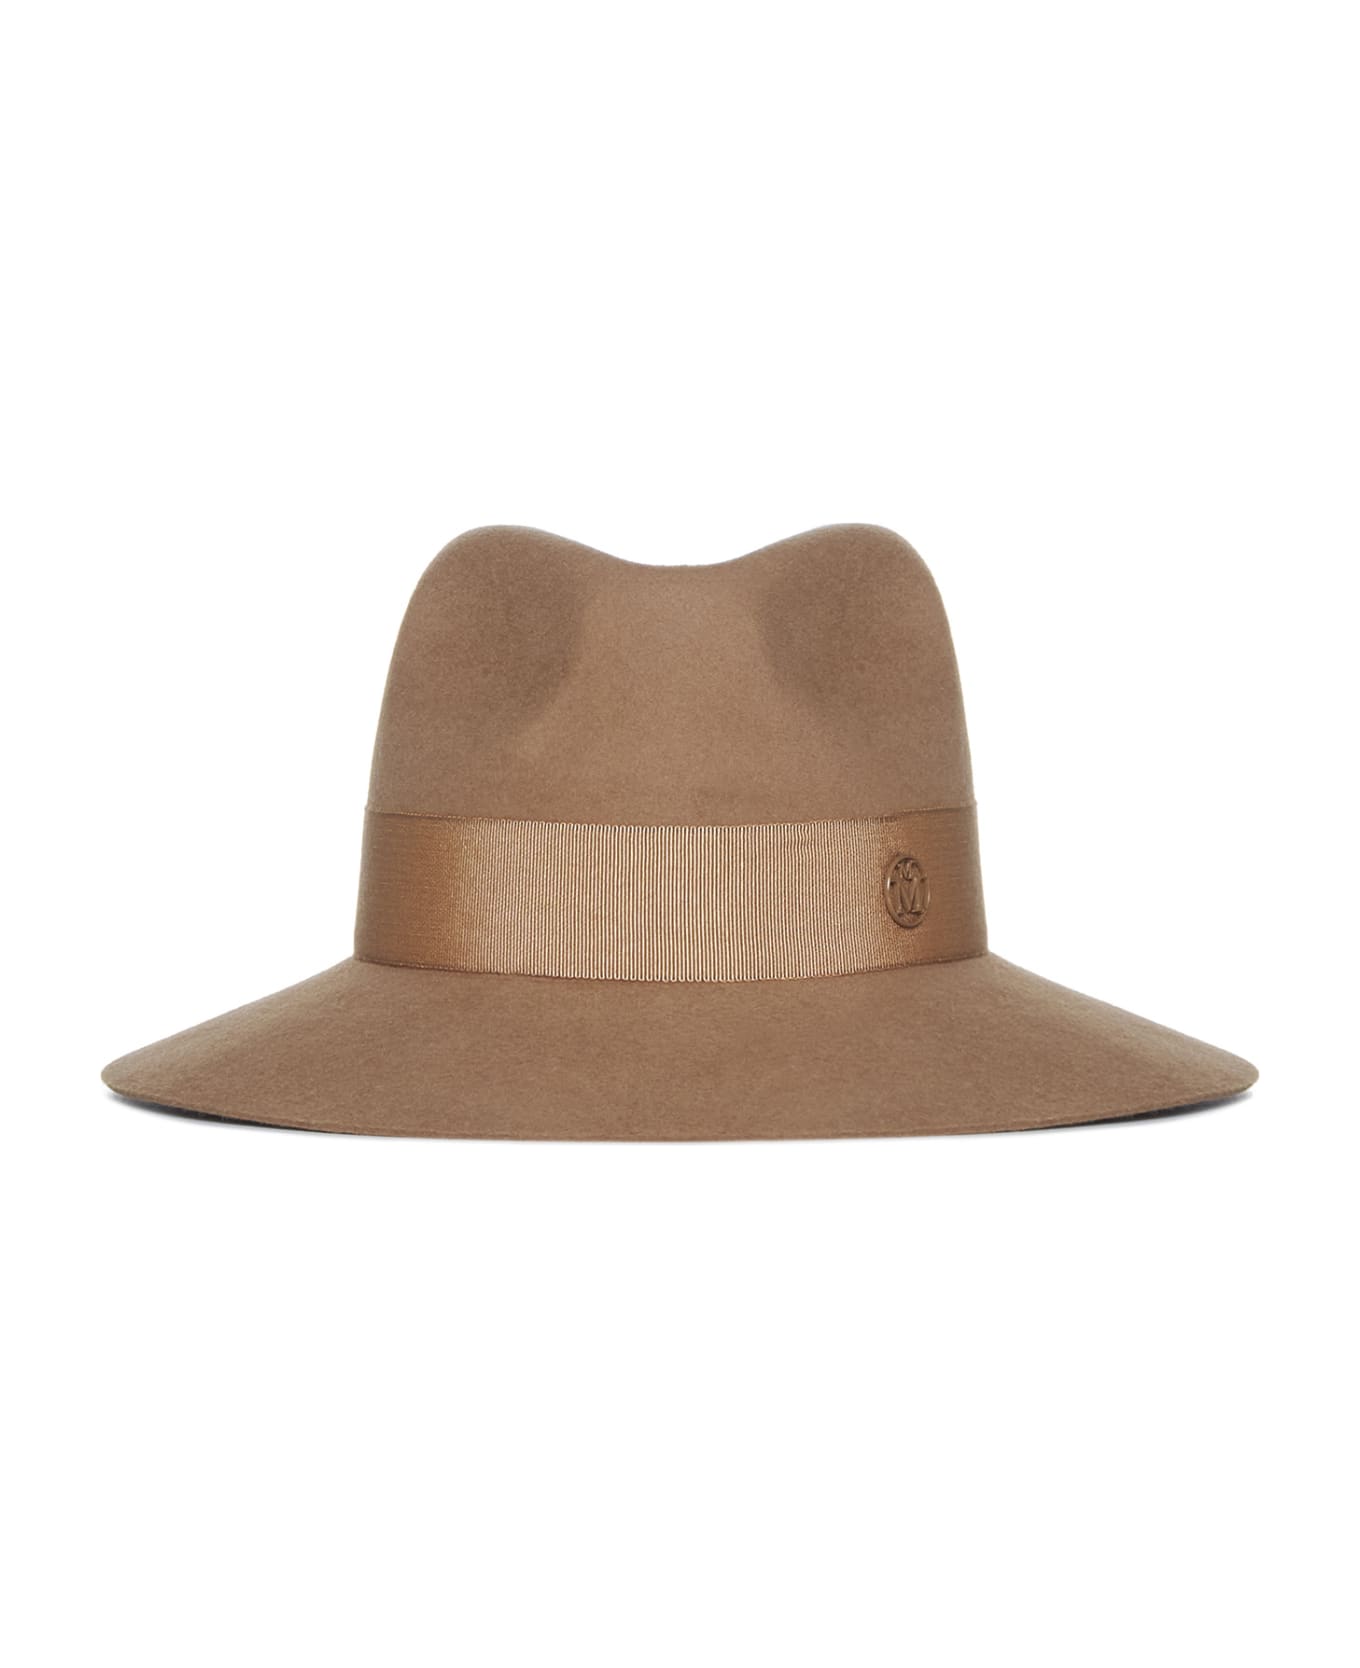 Maison Michel Hat - Camel 帽子